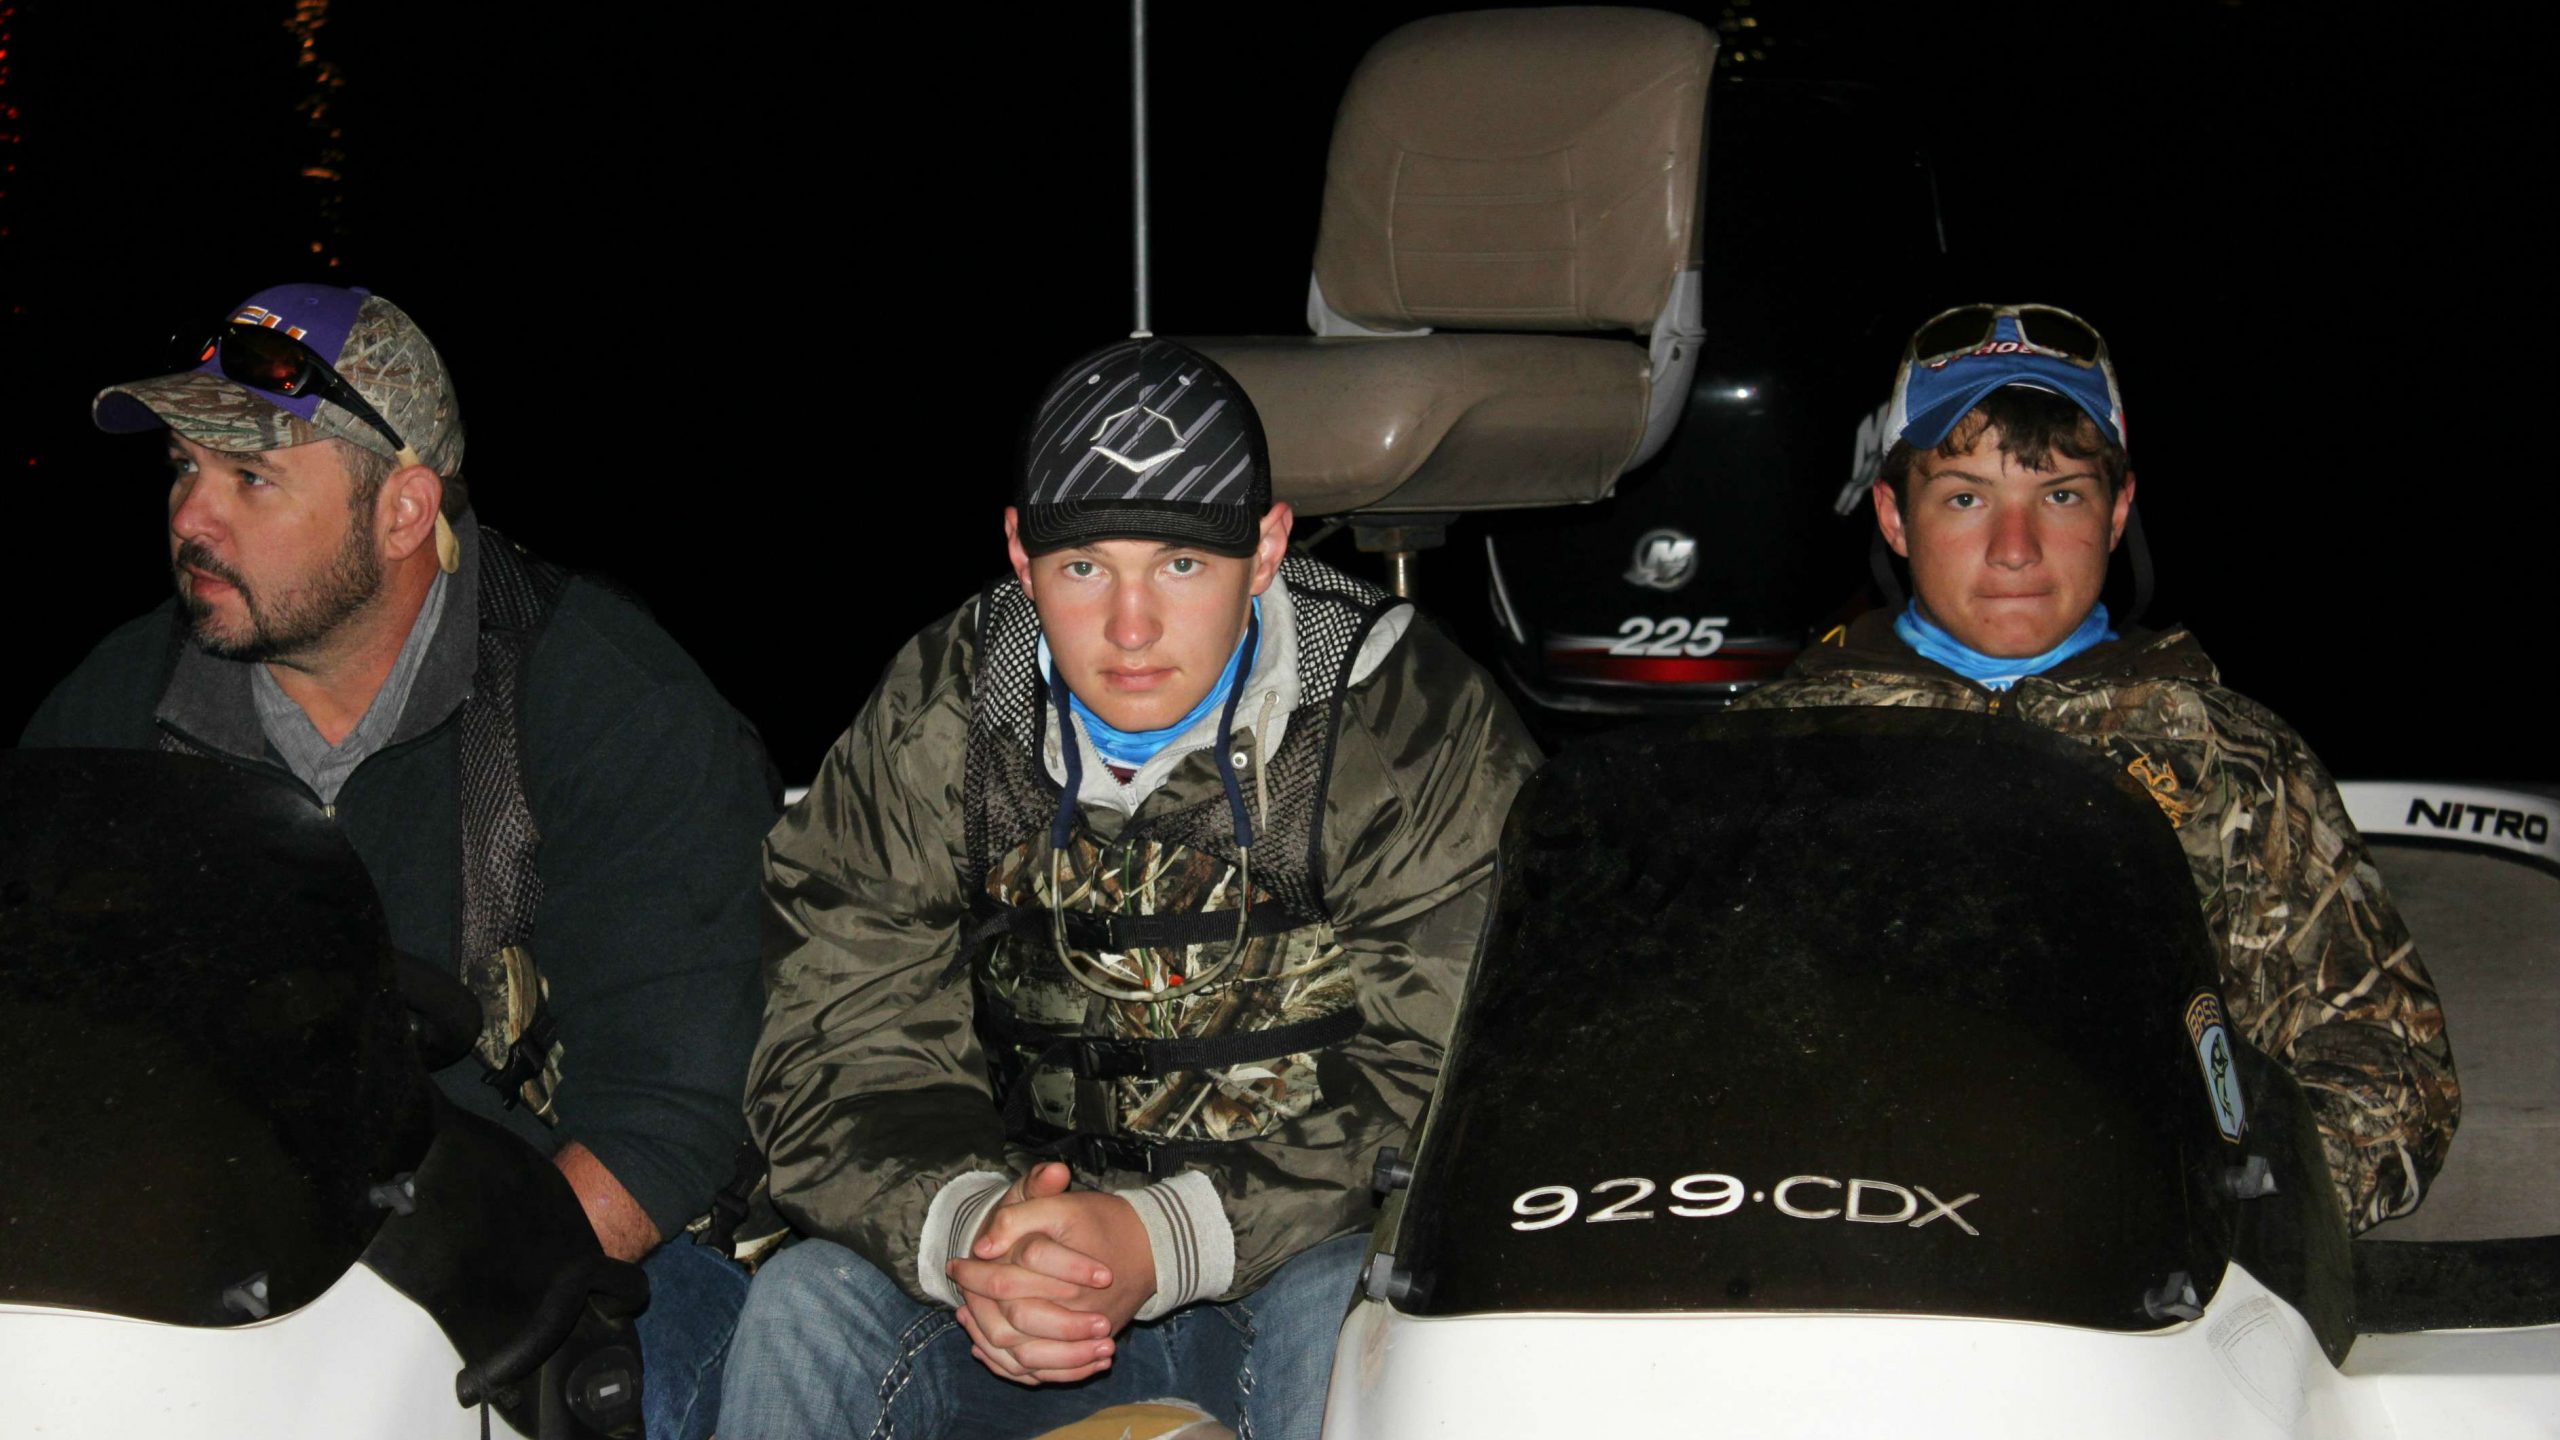 Mark Van Matre, Dylan Van Matre, and Dustin Van Matre patiently await the day's fishing action.